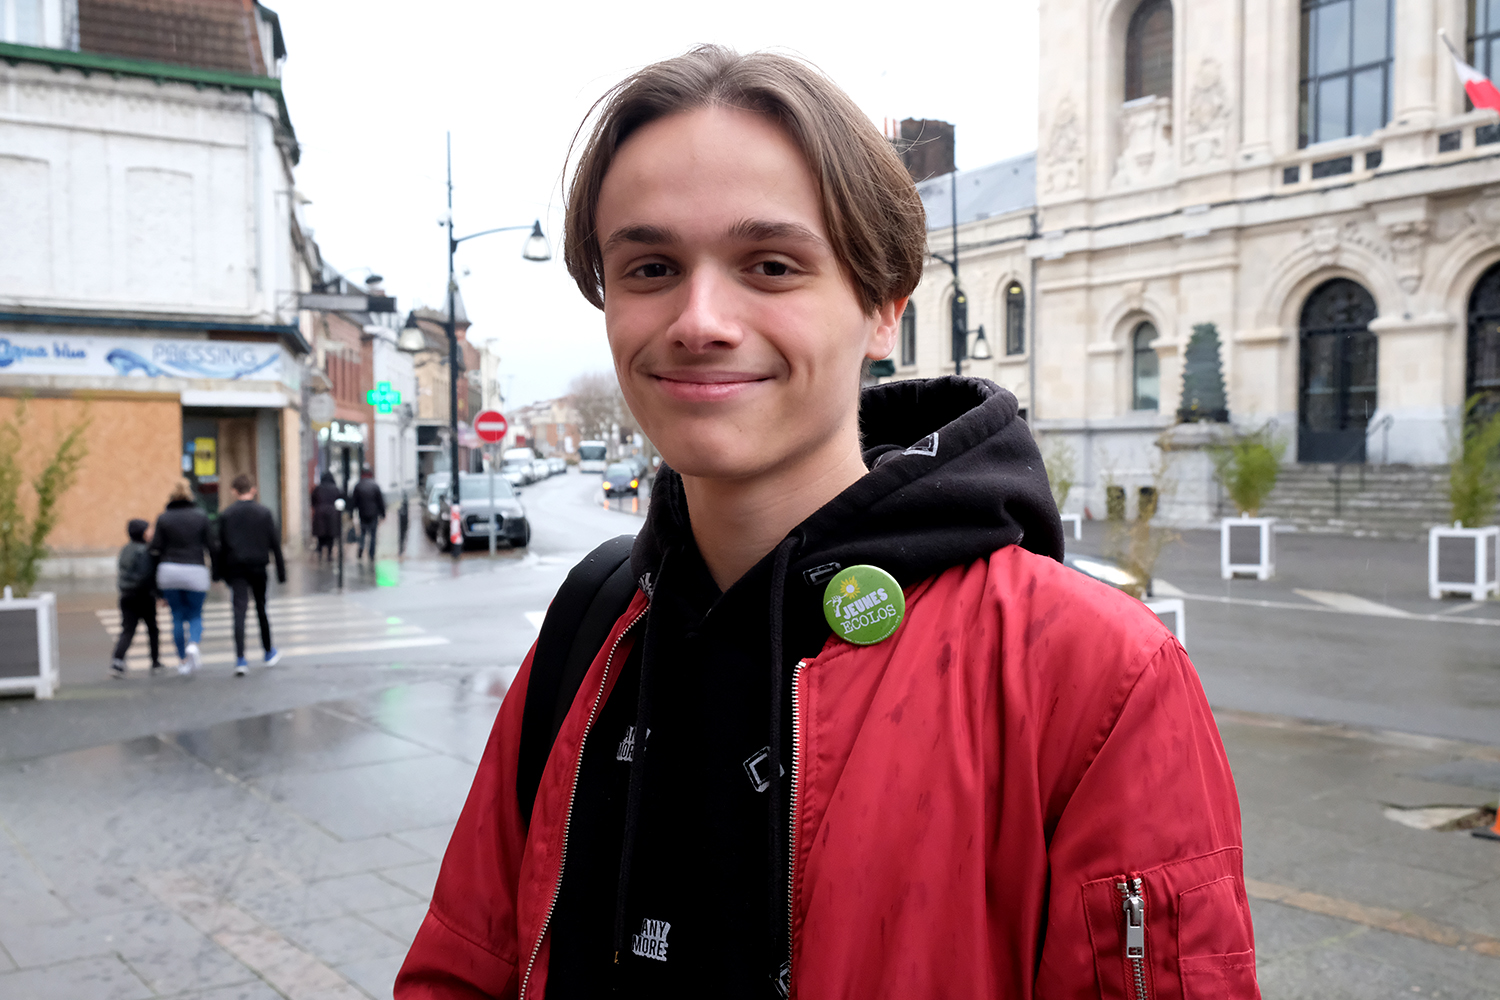 Davy a 17 ans, il est militant écologiste et membre de la fédération des Jeunes écologistes.